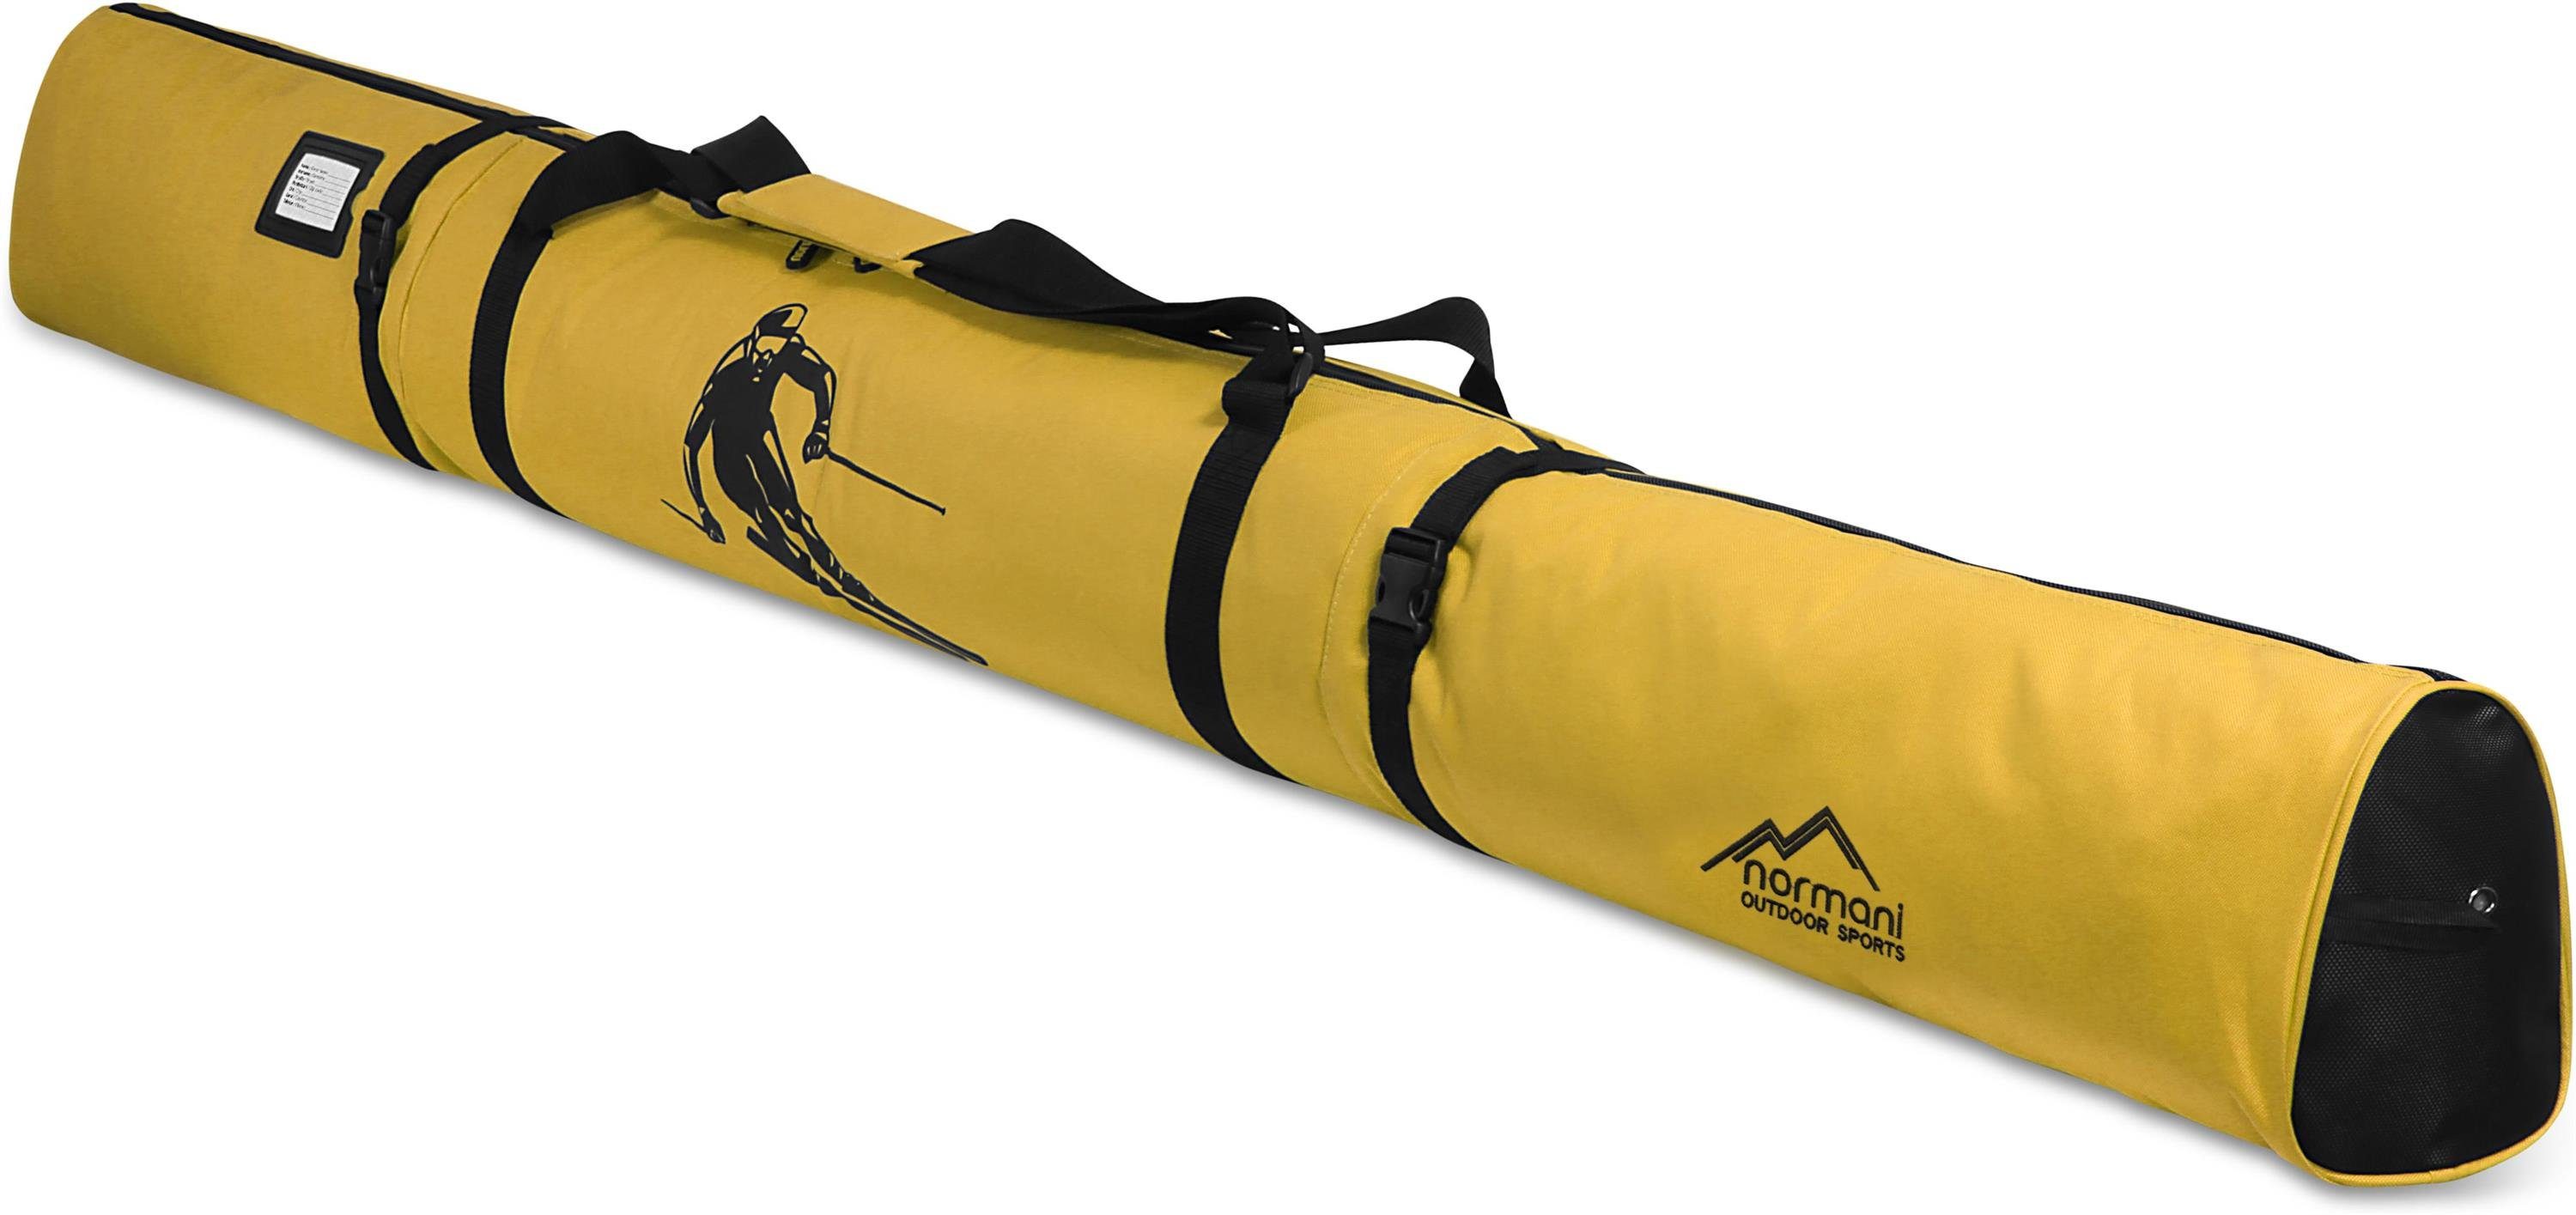 normani Sporttasche Skitasche Alpine Run 200, Skisack - Skitasche für Skier und Skistöcke Transporttasche Aufbewahrungstasche Gelb